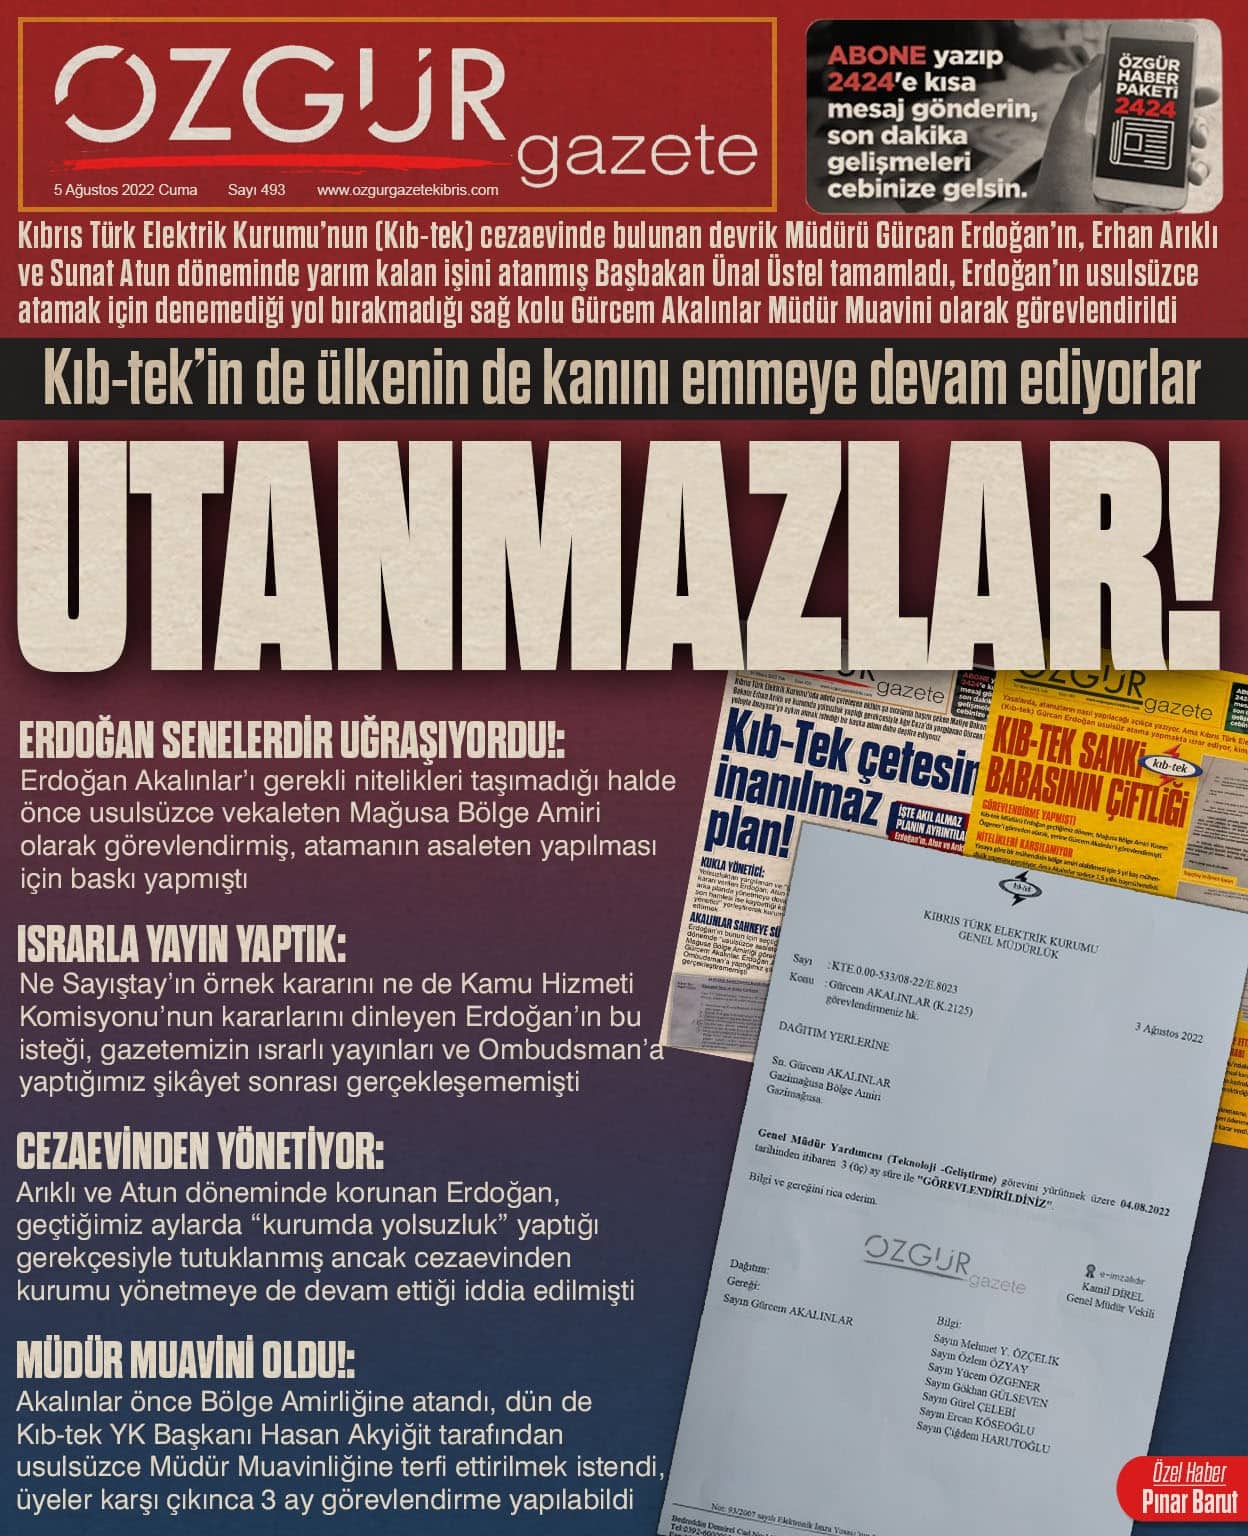 ozgur_gazete_kibris_kıbtek_gurcanerdogan_5agustos_mansetjpg